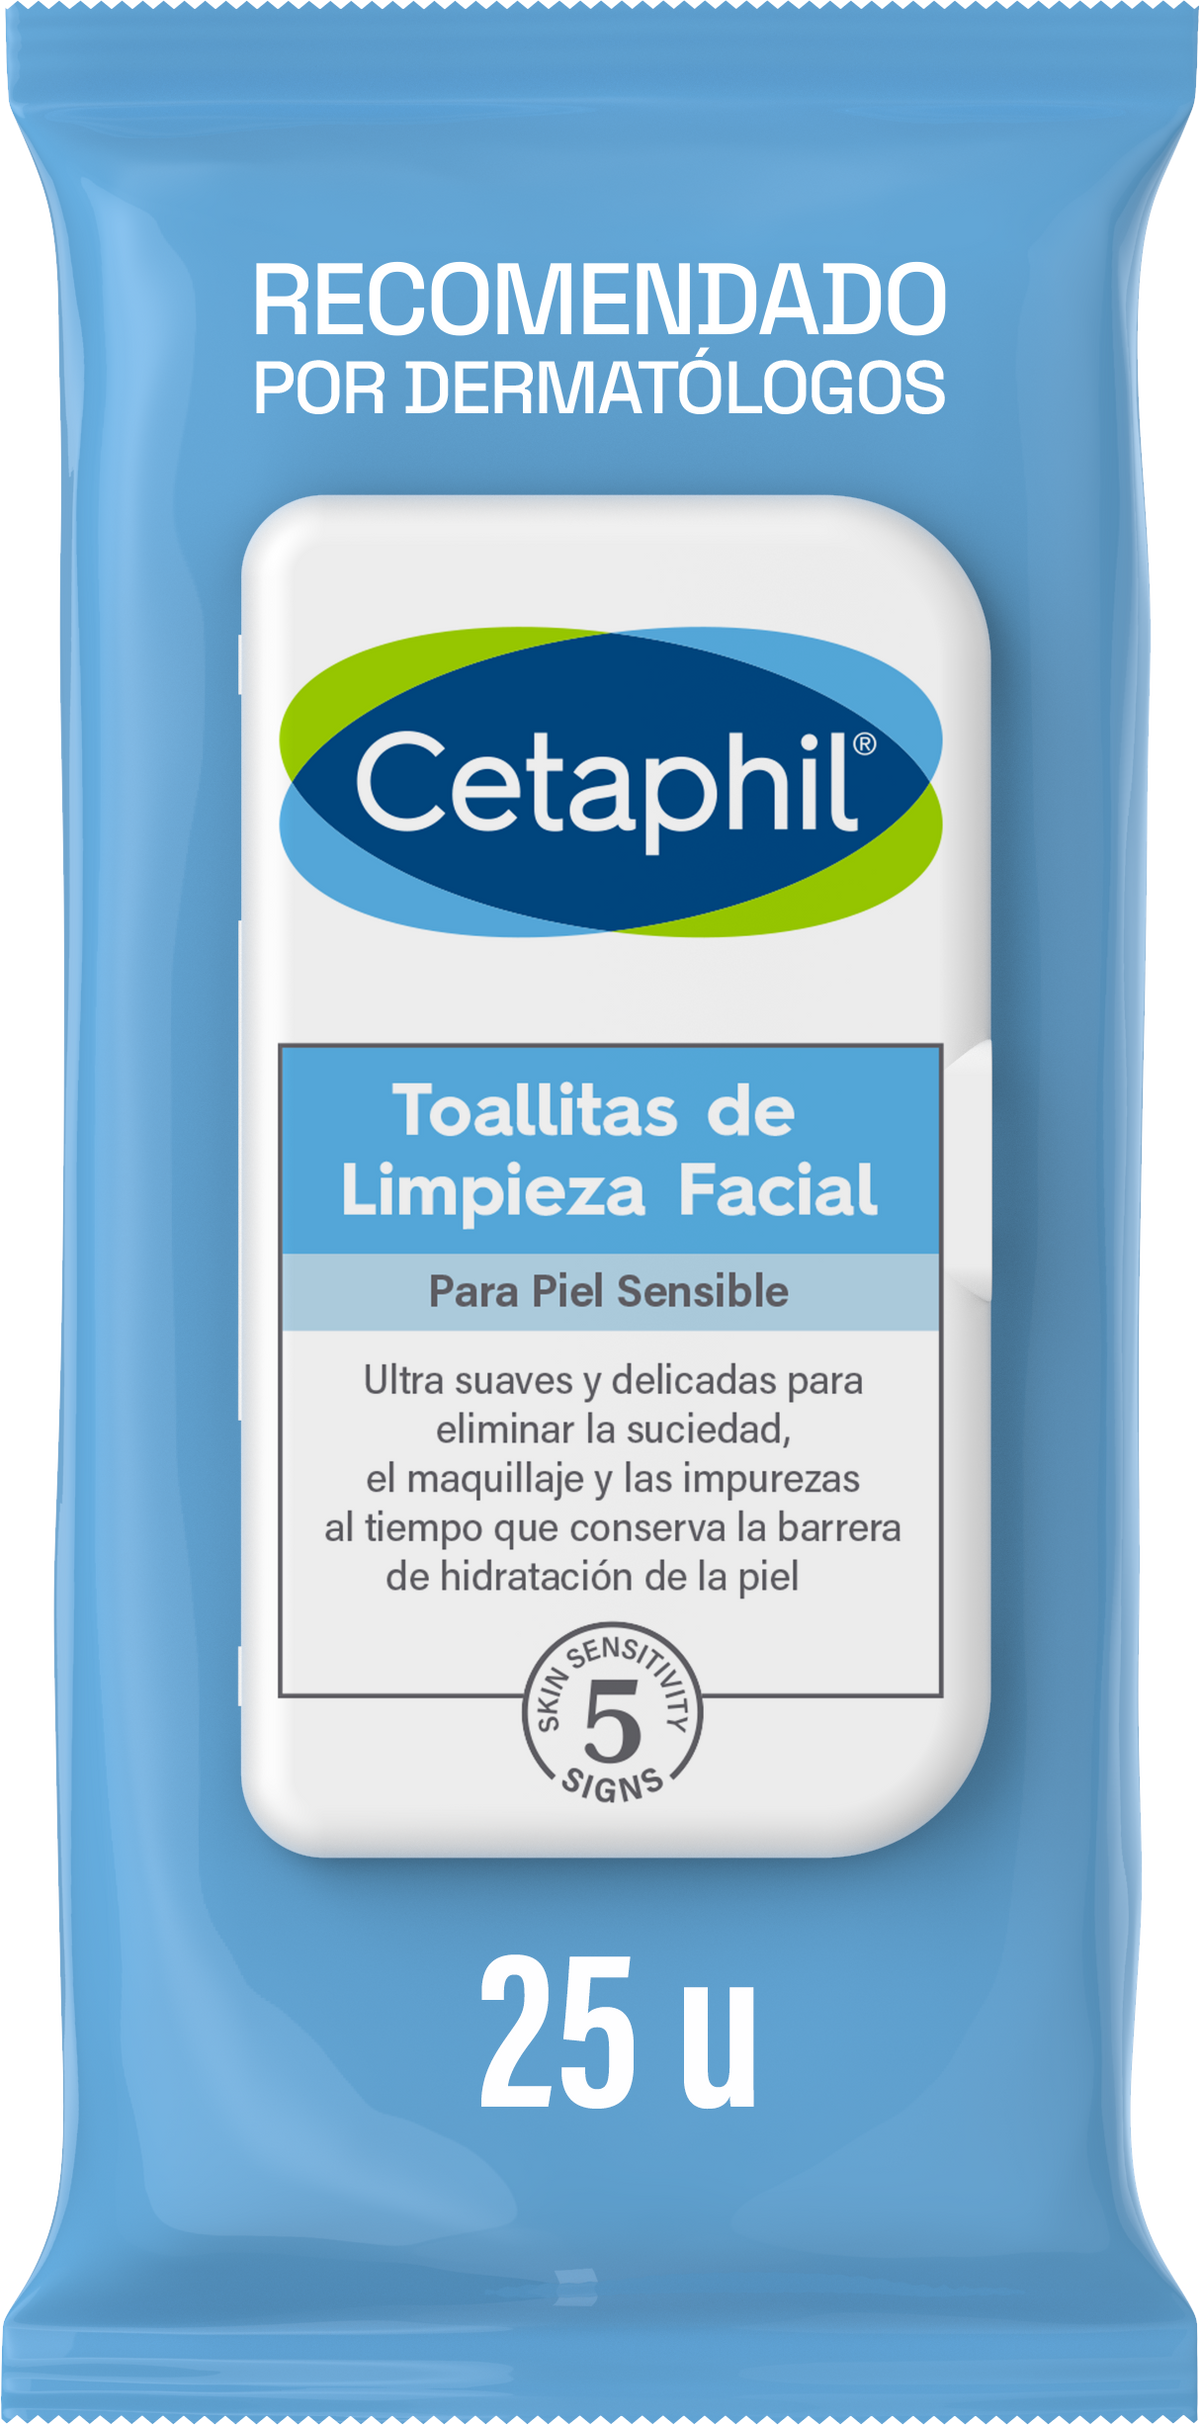 Cetaphil Toallitas de Limpieza Facial para Piel Sensible